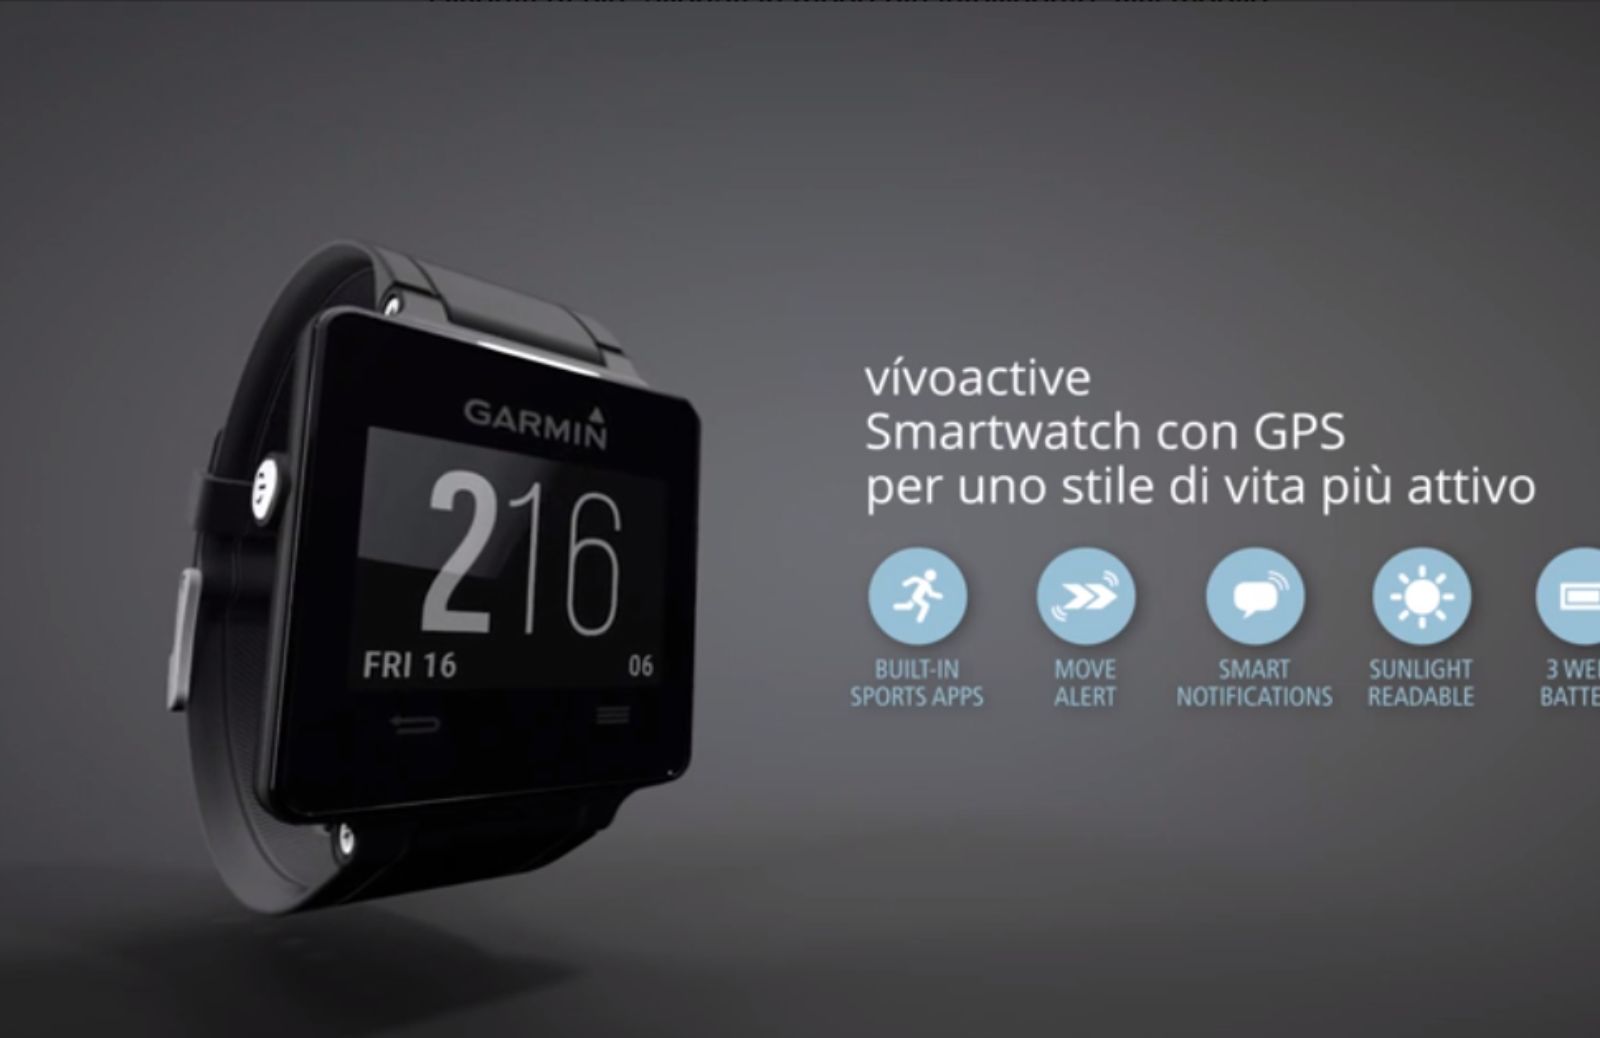 Garmin Vivoactive, l'orologio con GPS per gli sportivi